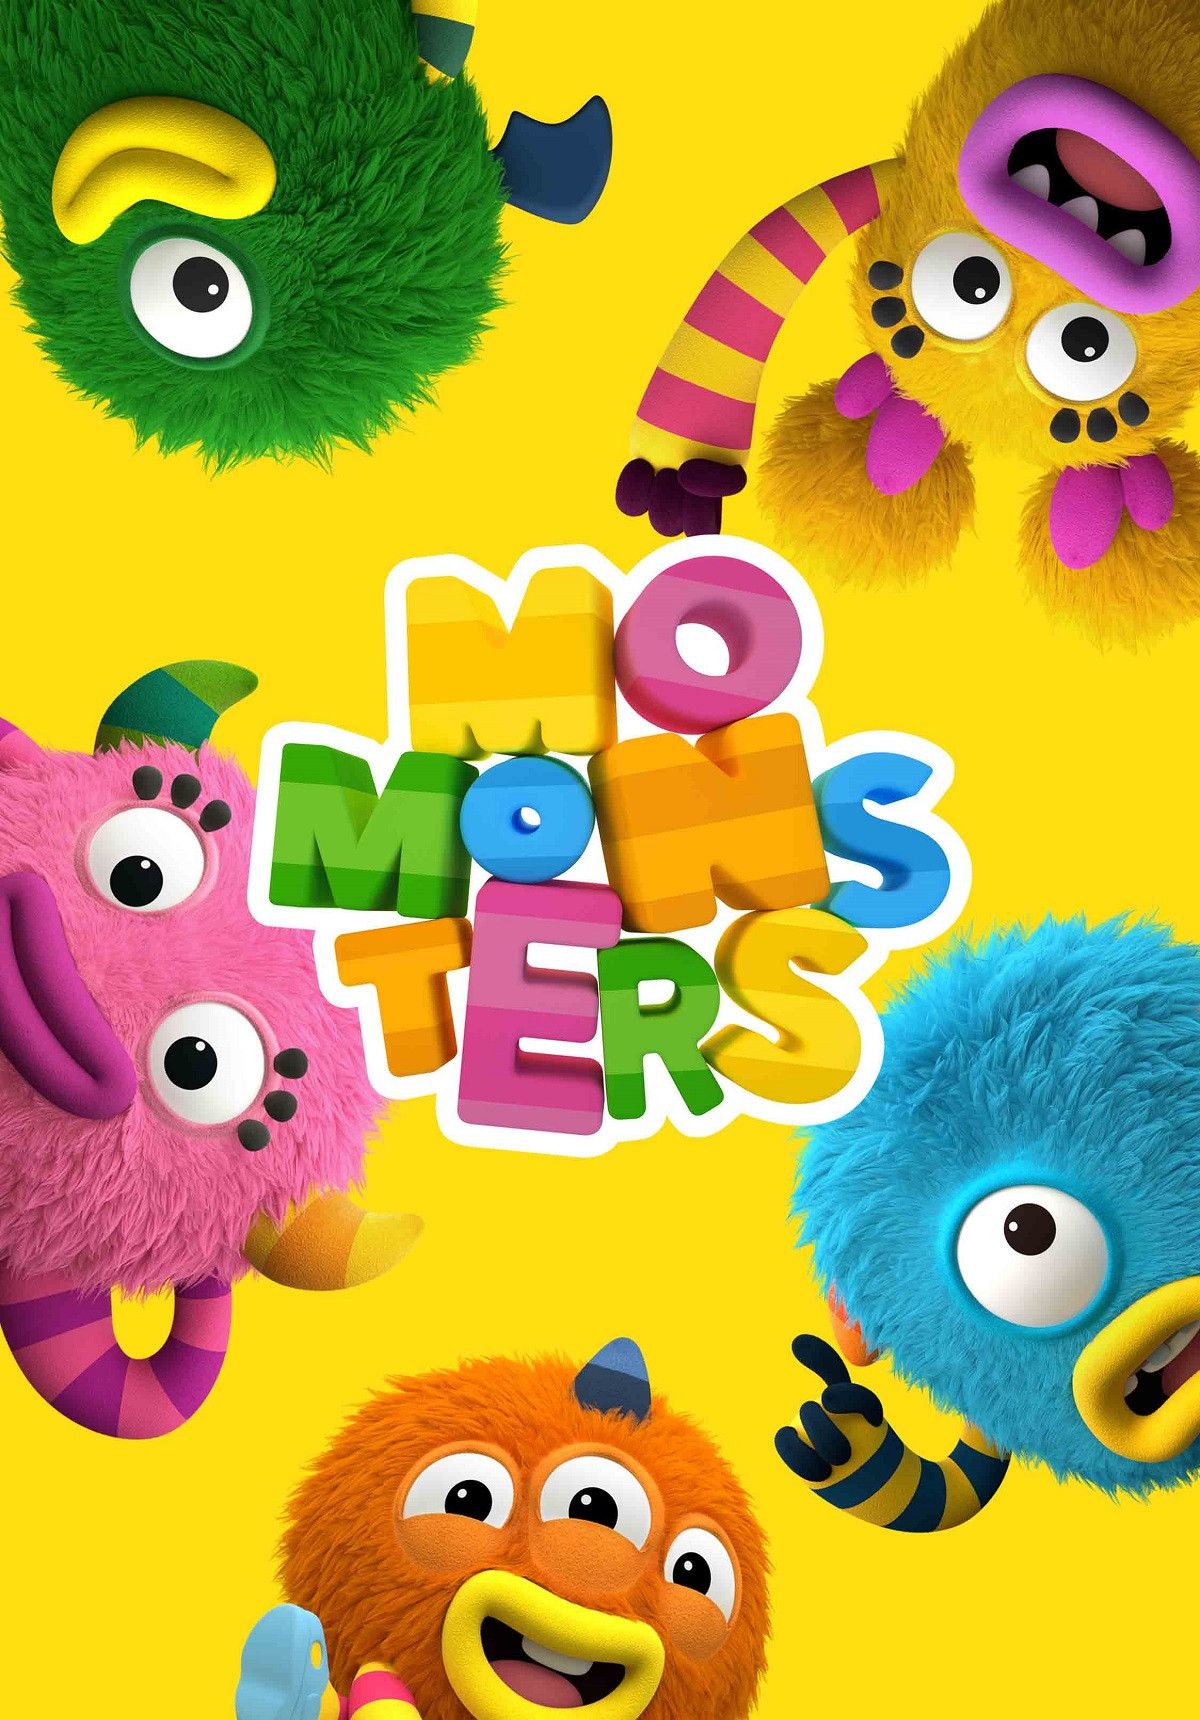 Momonsters02